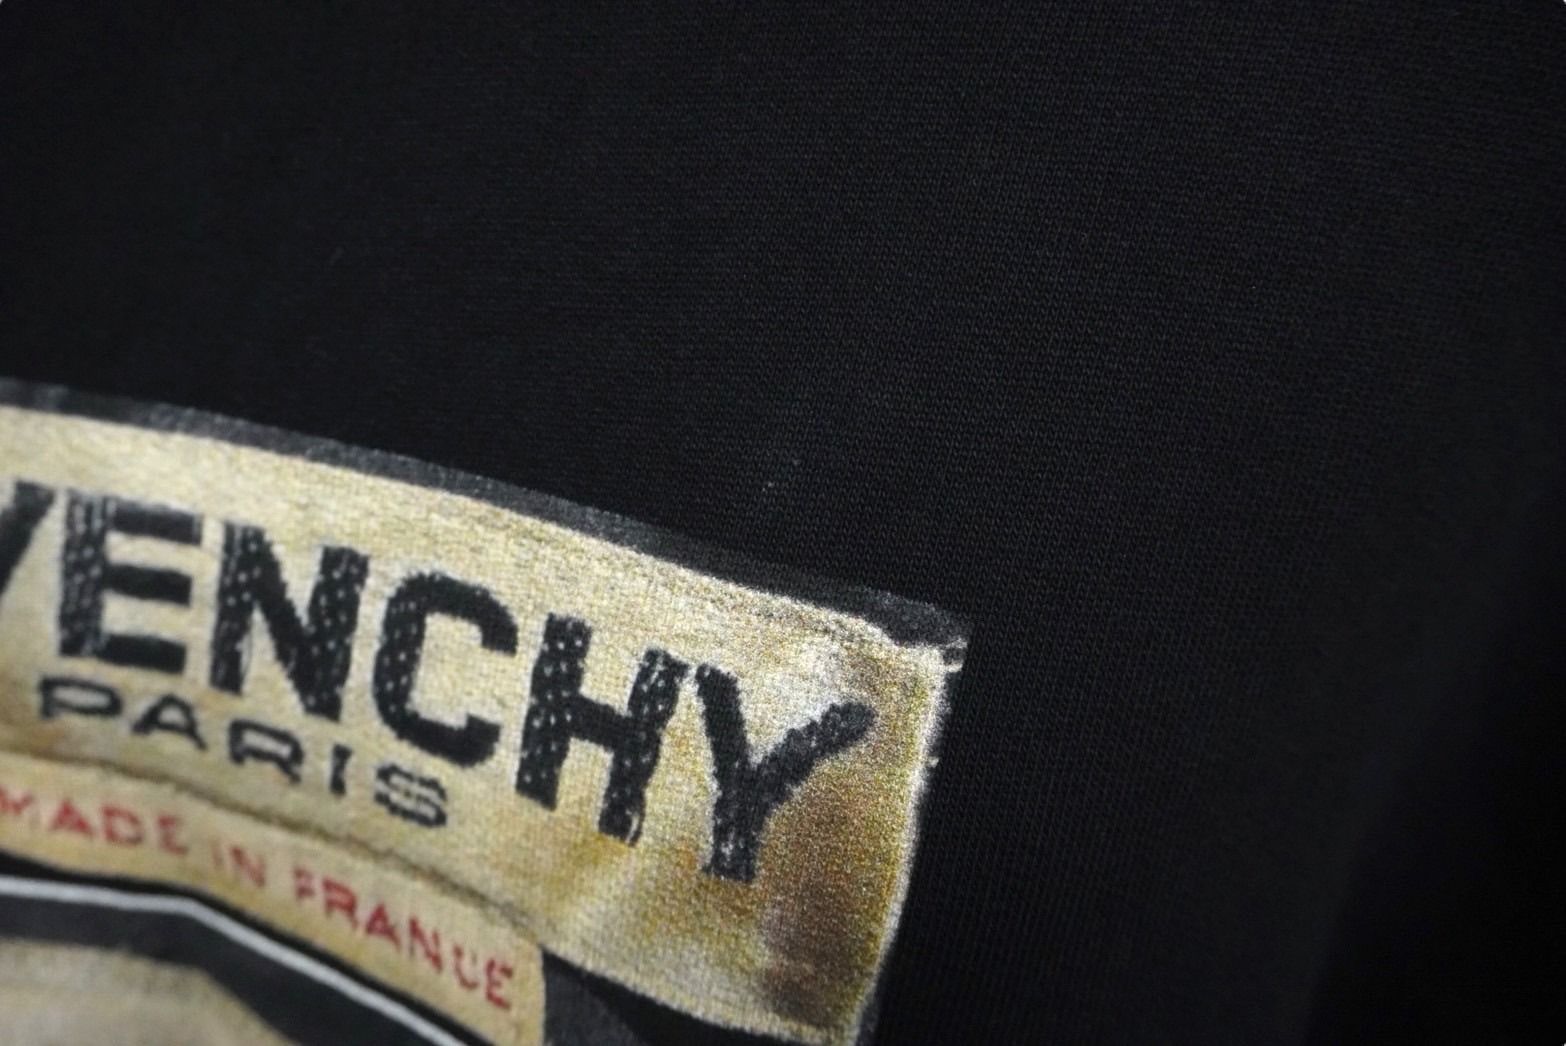 Givenchy ジバンシー スウェット トレーナー 裏起毛 フォトデザイン ブラック サイズL 17S7345653 美品  58207